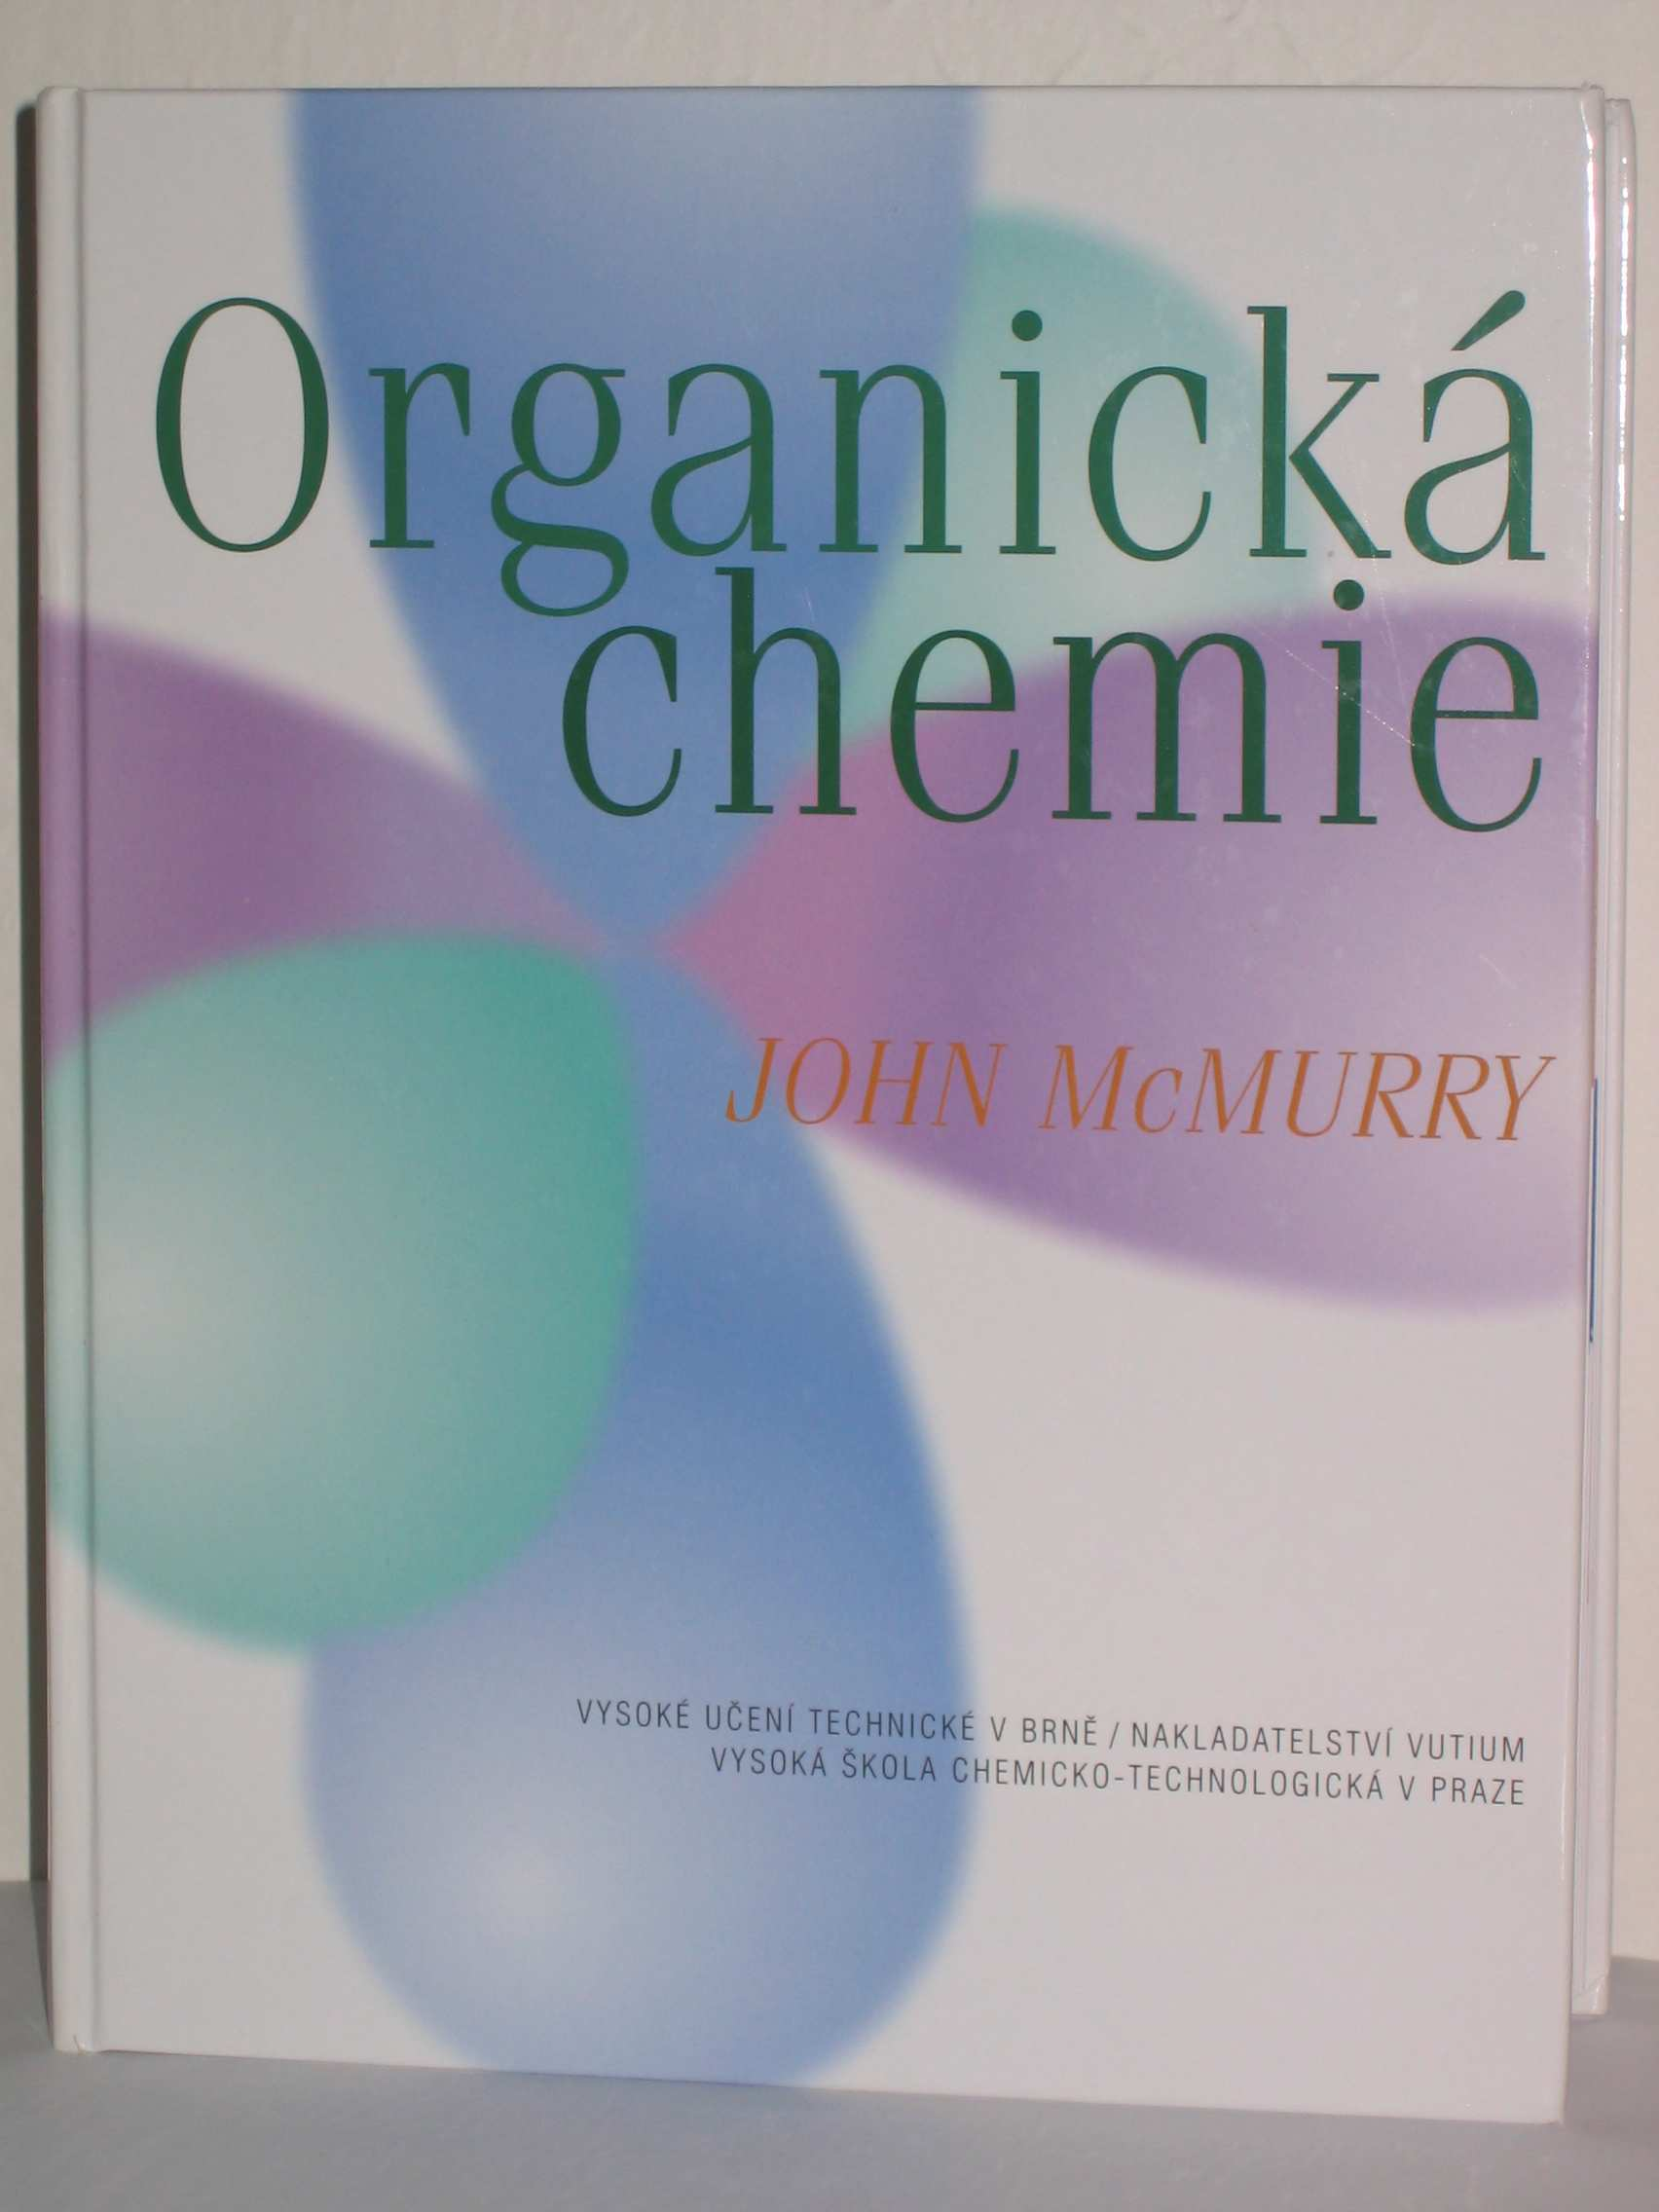 Literatura John McMurry: rganická chemie, 2007, VUT v Brně, ISBN: 978-80-214-3291-8/ Nakladatelství VUTIUM, VŠT Praha, ISBN:978-80- 7080-637-1, přeloženo z